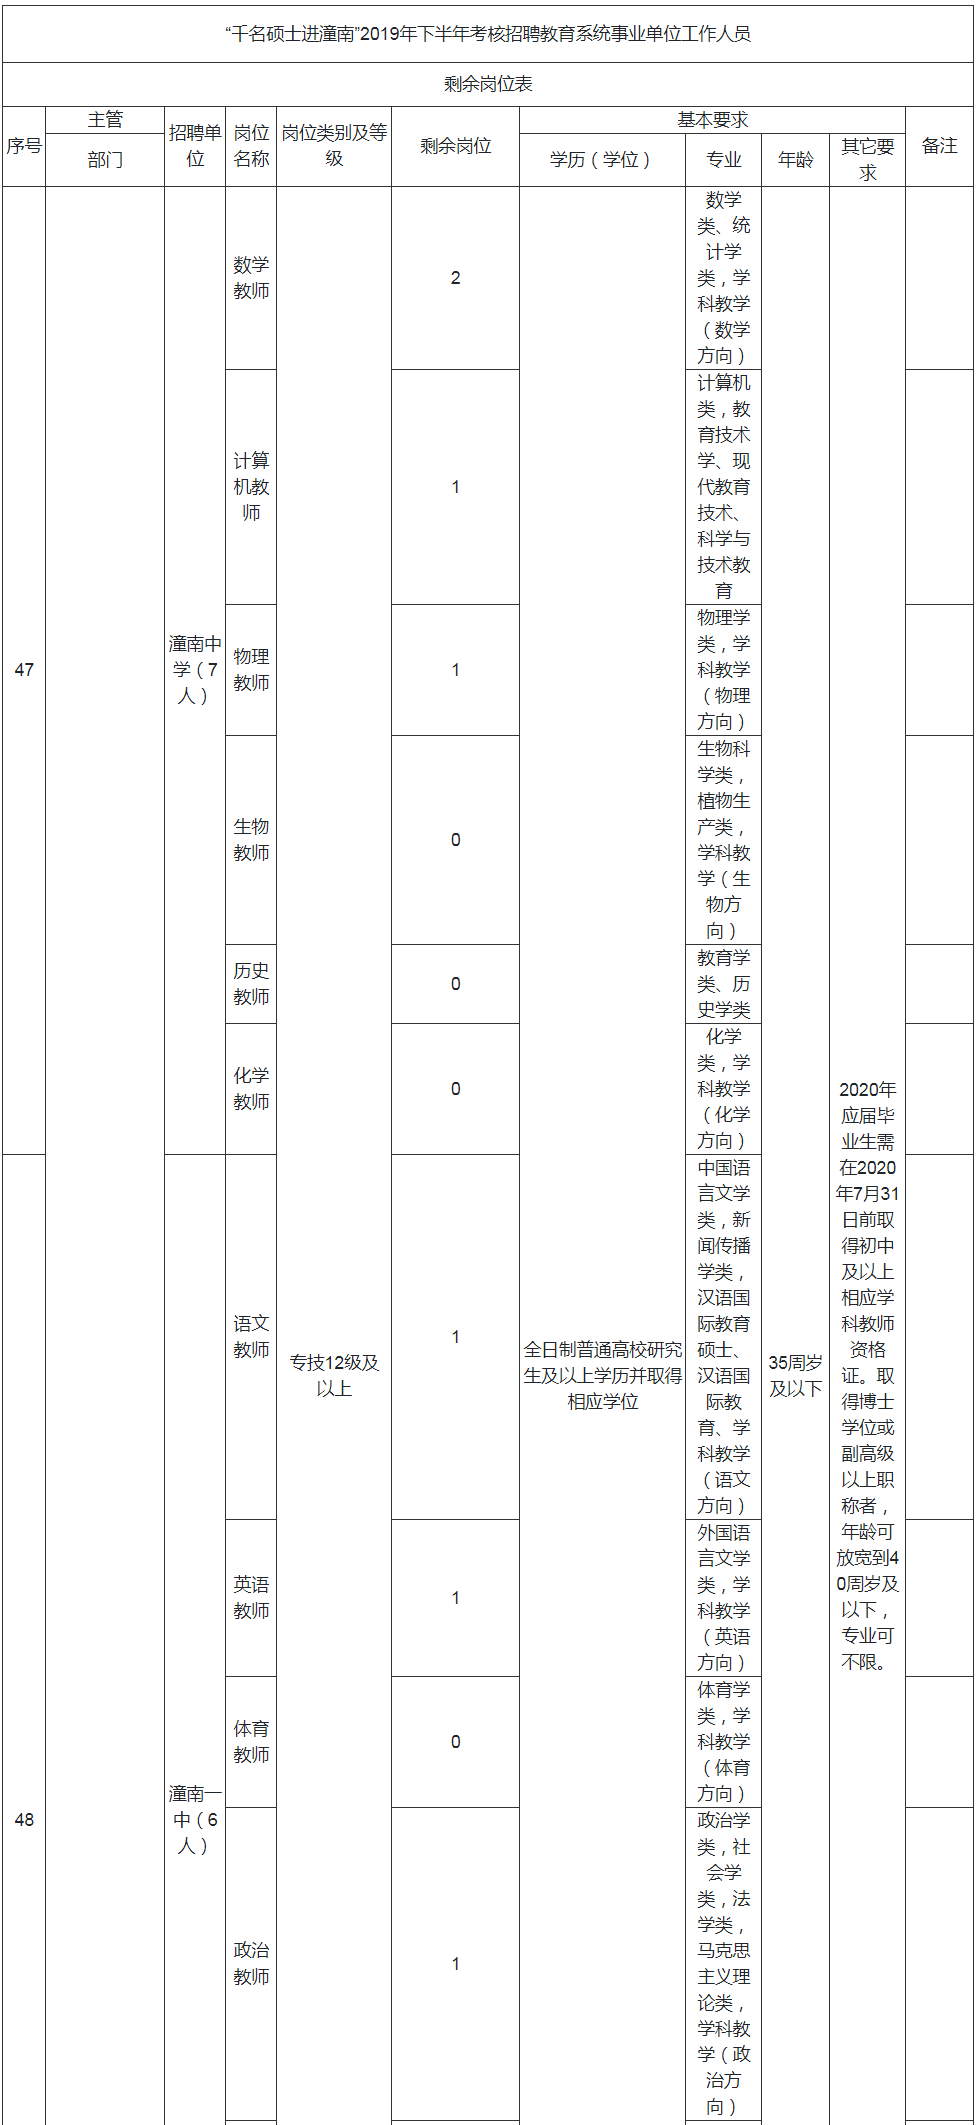 “千名硕士进潼南”2019年下半年考核招聘教育系统事业单位工作人员剩余岗位表